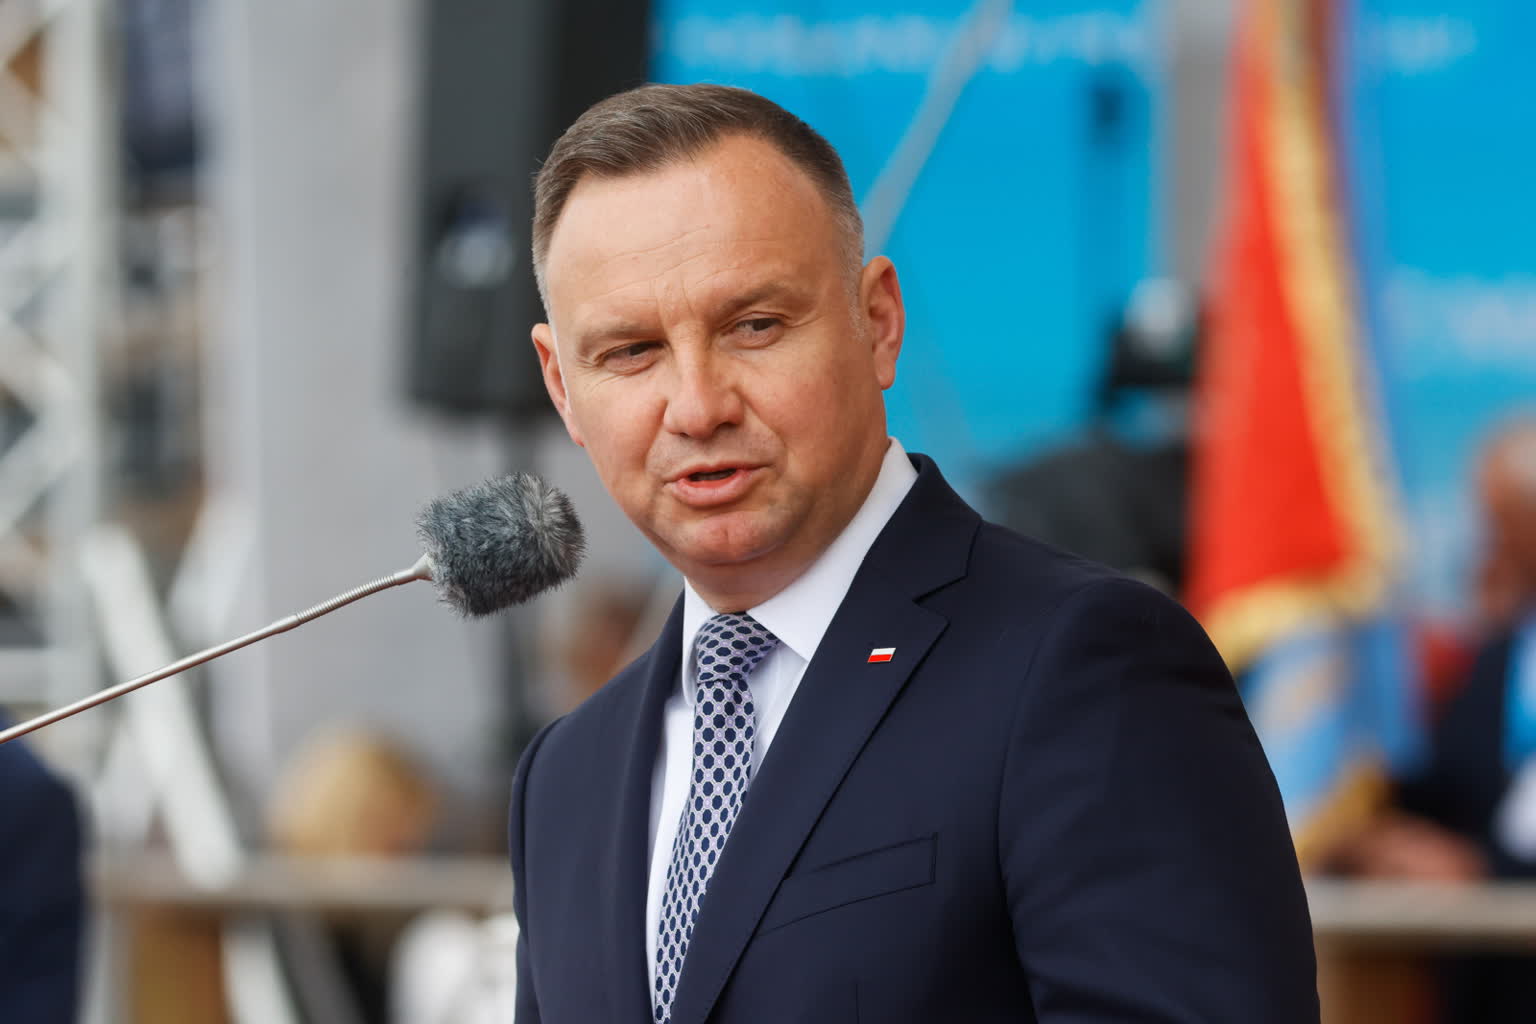 Il premier Duda: "Il missile caduto in Polonia è stato probabilmente un incidente sfortunato"